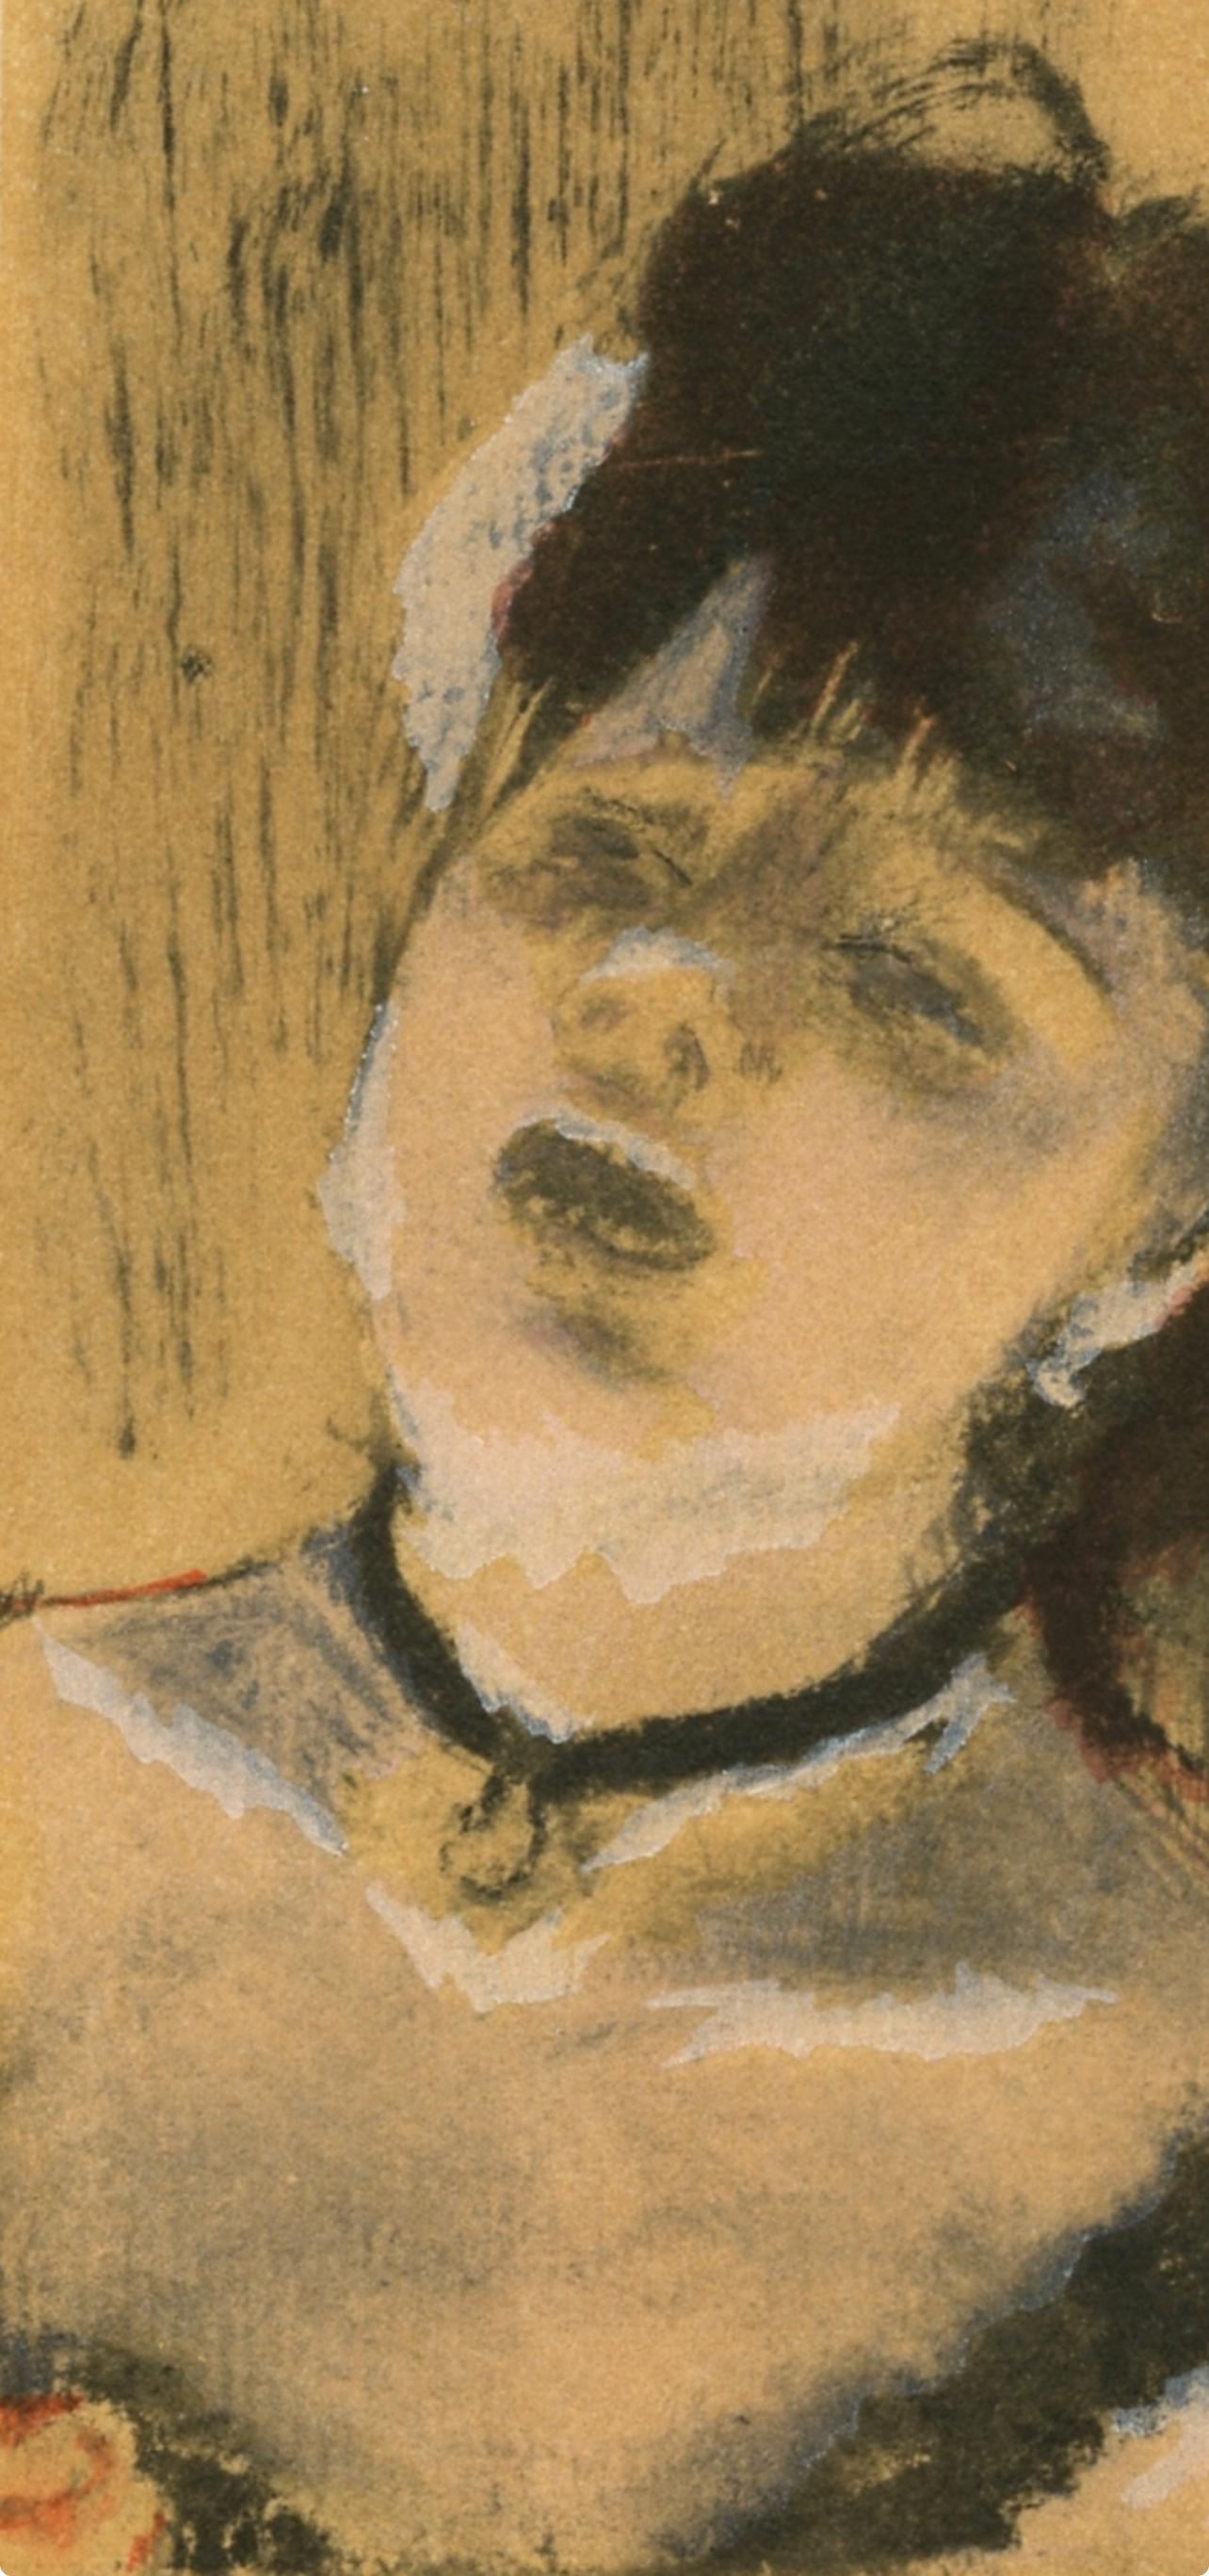 Degas, La Chanteuse du Cafe-Concert, Les Monotypes (after) - Impressionist Print by Edgar Degas